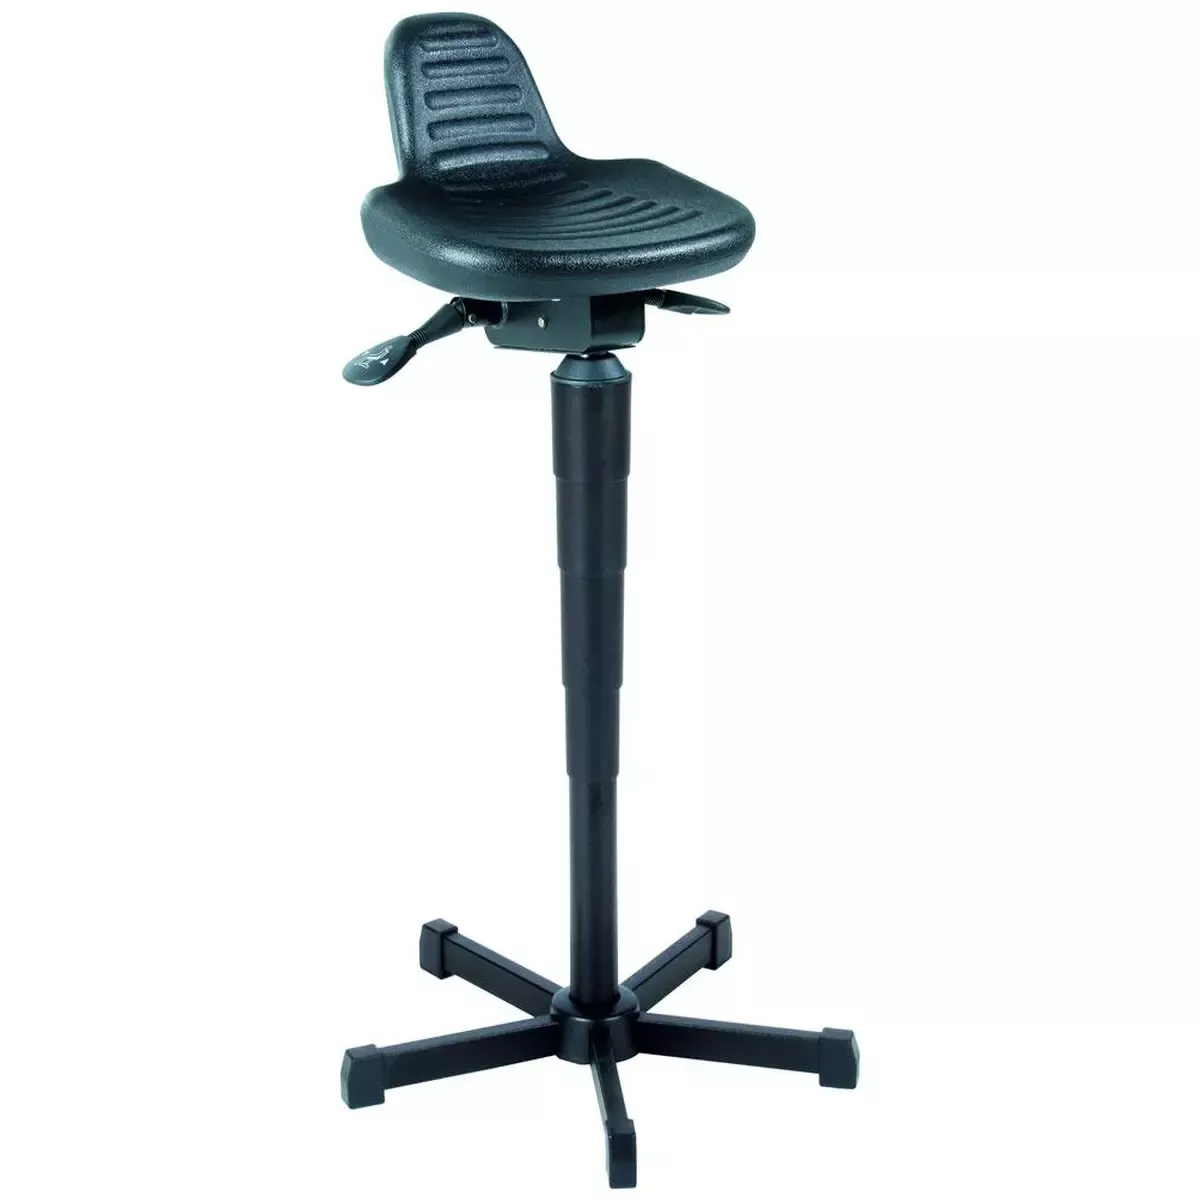 Stehhilfe mit Rückenlehne, Sitz PU-Schaum, Sitz Höhe 610-895mm, Gestell schwarz